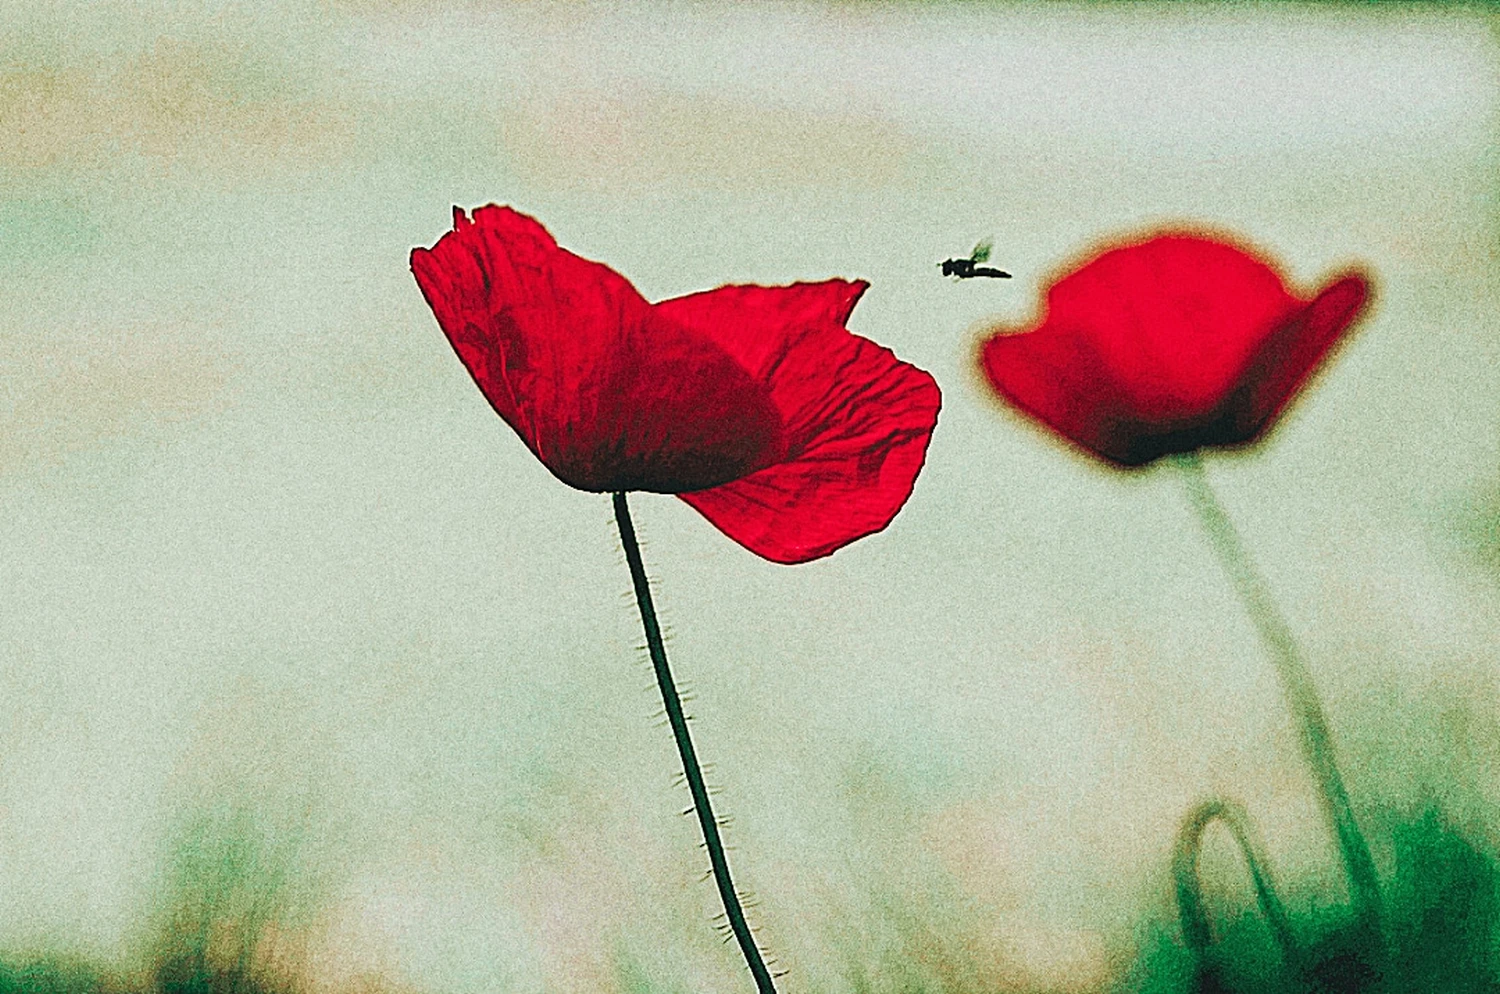 Bild einer roten Rose